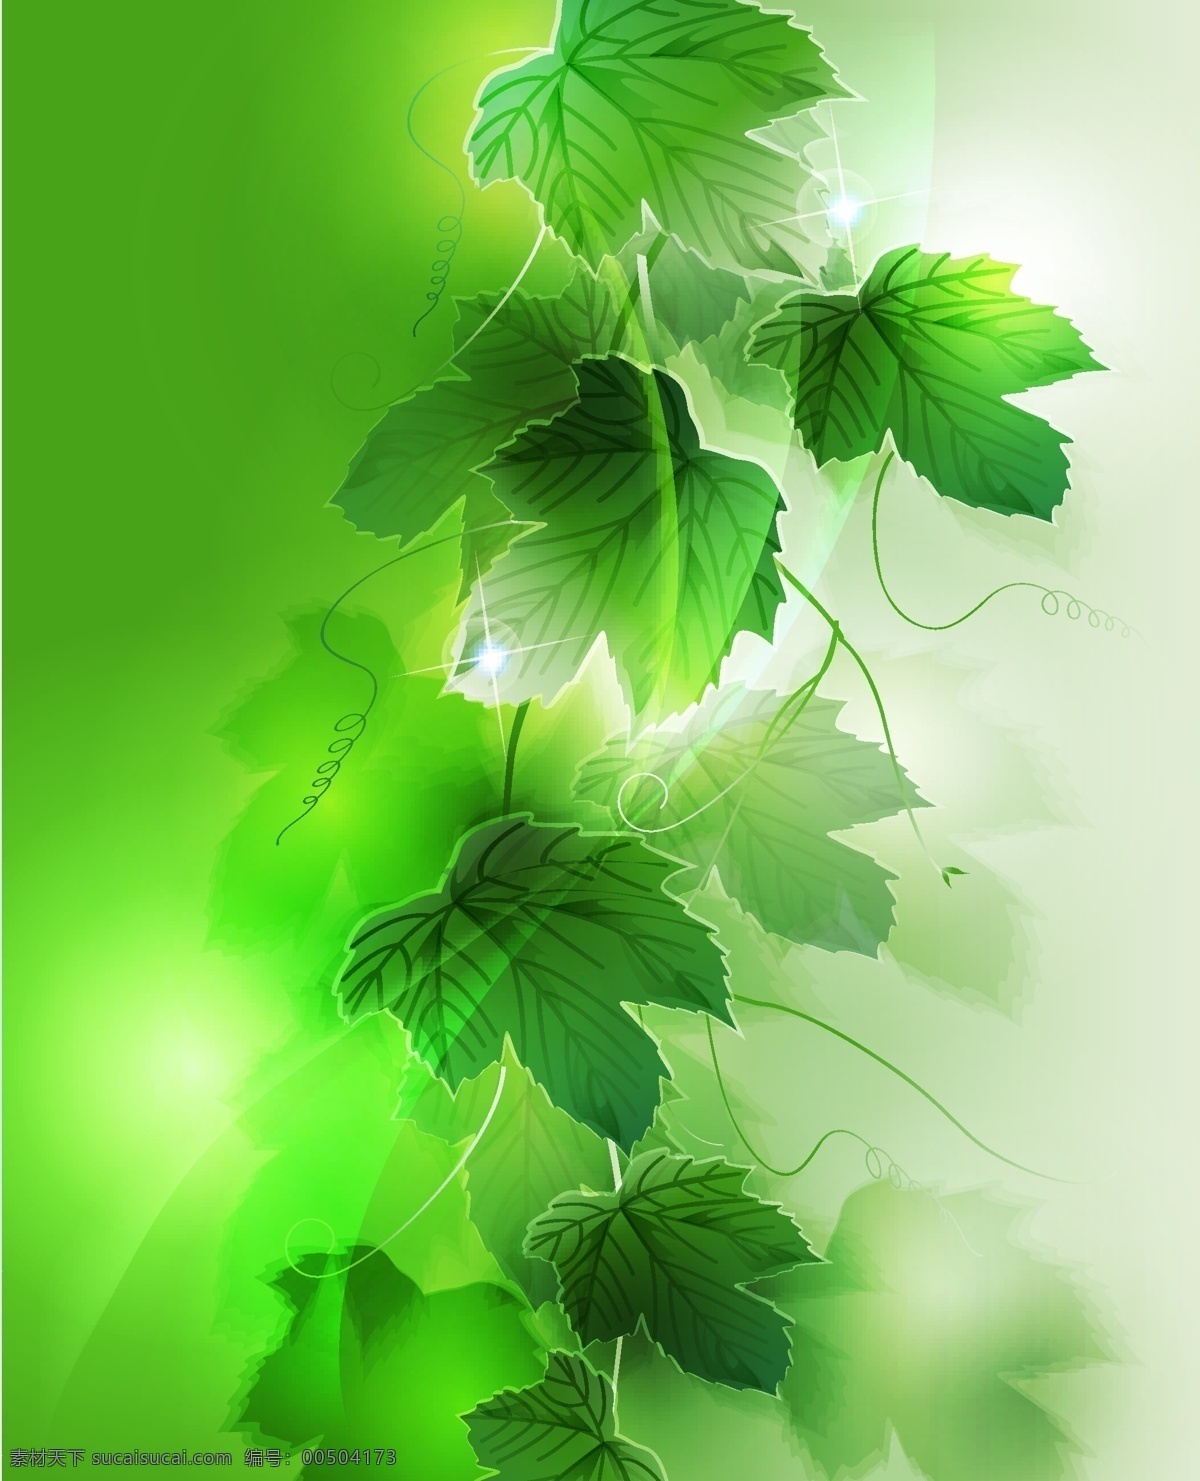 梦幻 植物 背景 矢量图 春色 春天 春意 绿叶 素材图片 藤类植物 其他矢量图